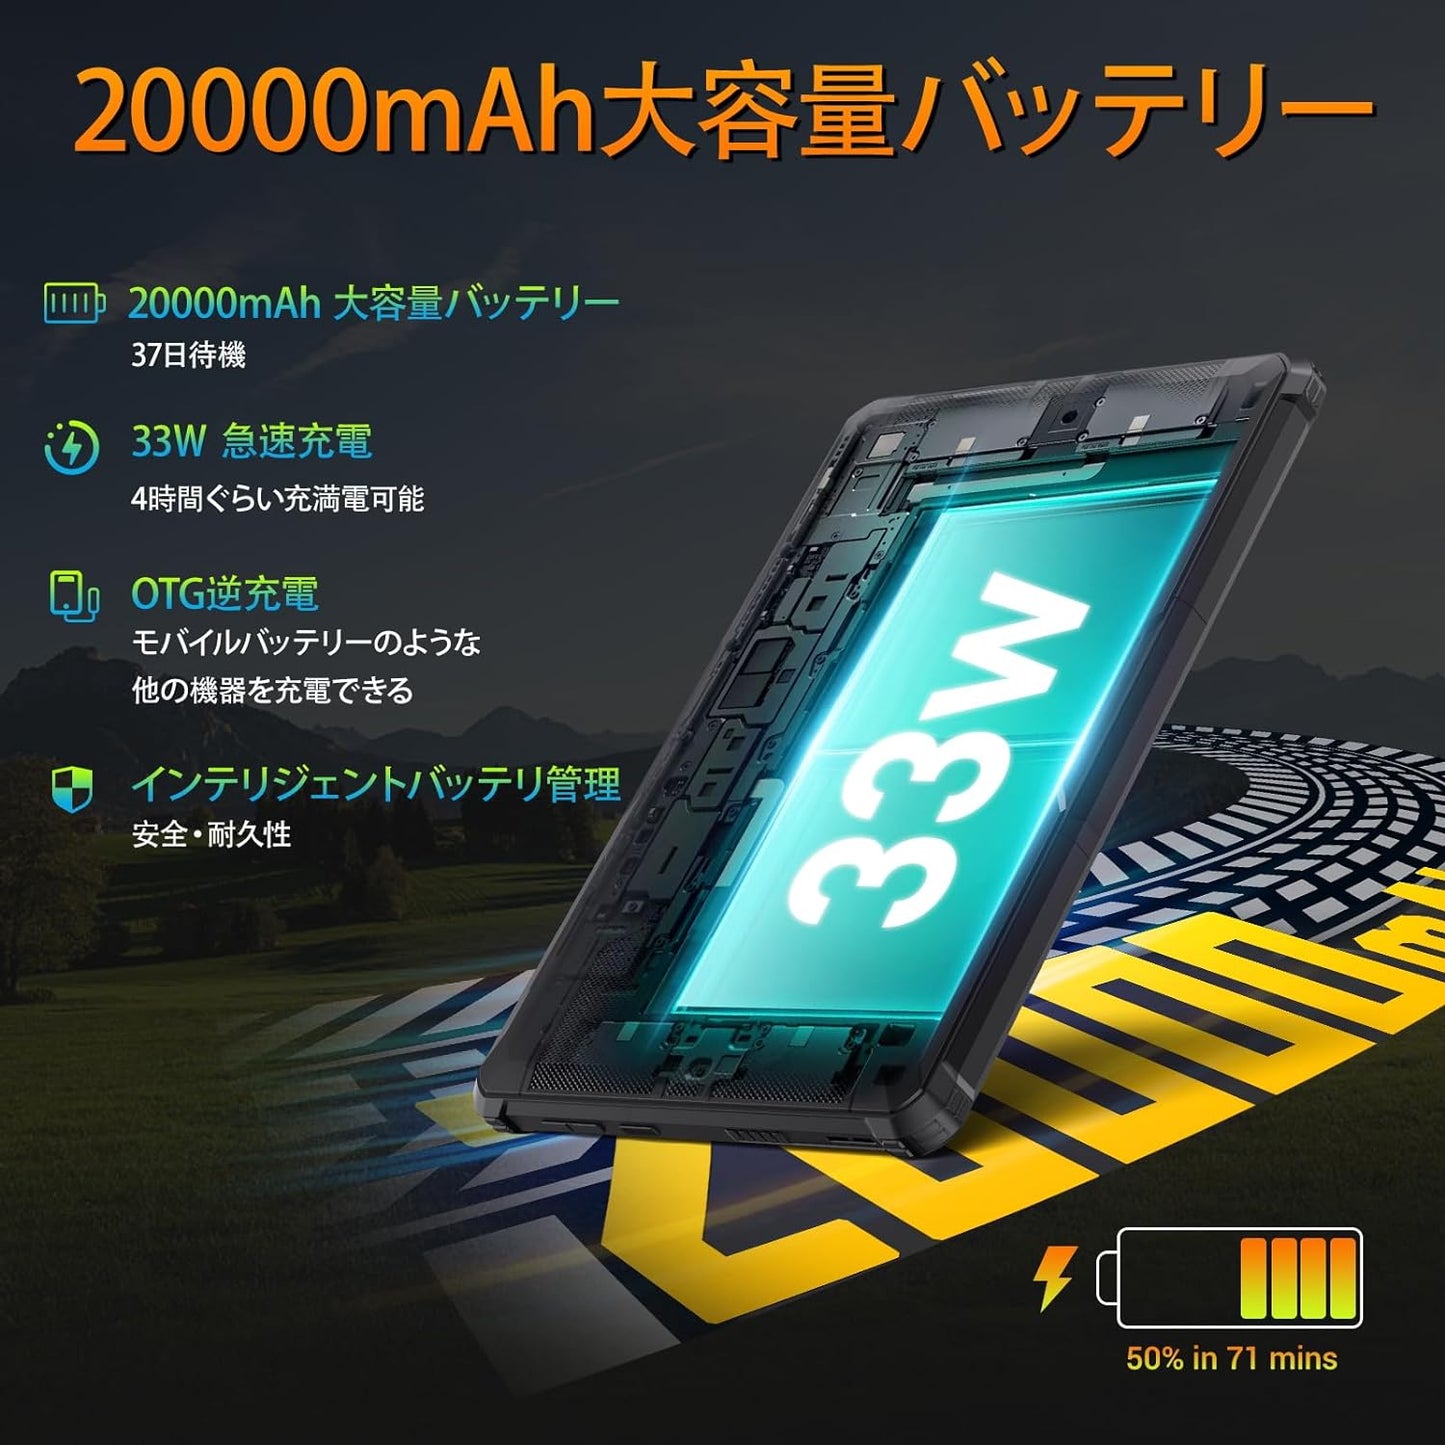 2023 NEW Android 13 RT6 防水タブレット 10.1インチ 20000mAh 大容量バッテリー 14GB RAM + 256GB ROM（1TB拡張可能）8コア 1200 * 1920 FHD+大画面IPS タフネスタブレット 防水防塵耐衝撃 4G SIMフリー 33W急速充電 16MPカメラ 顔認証 指紋認証